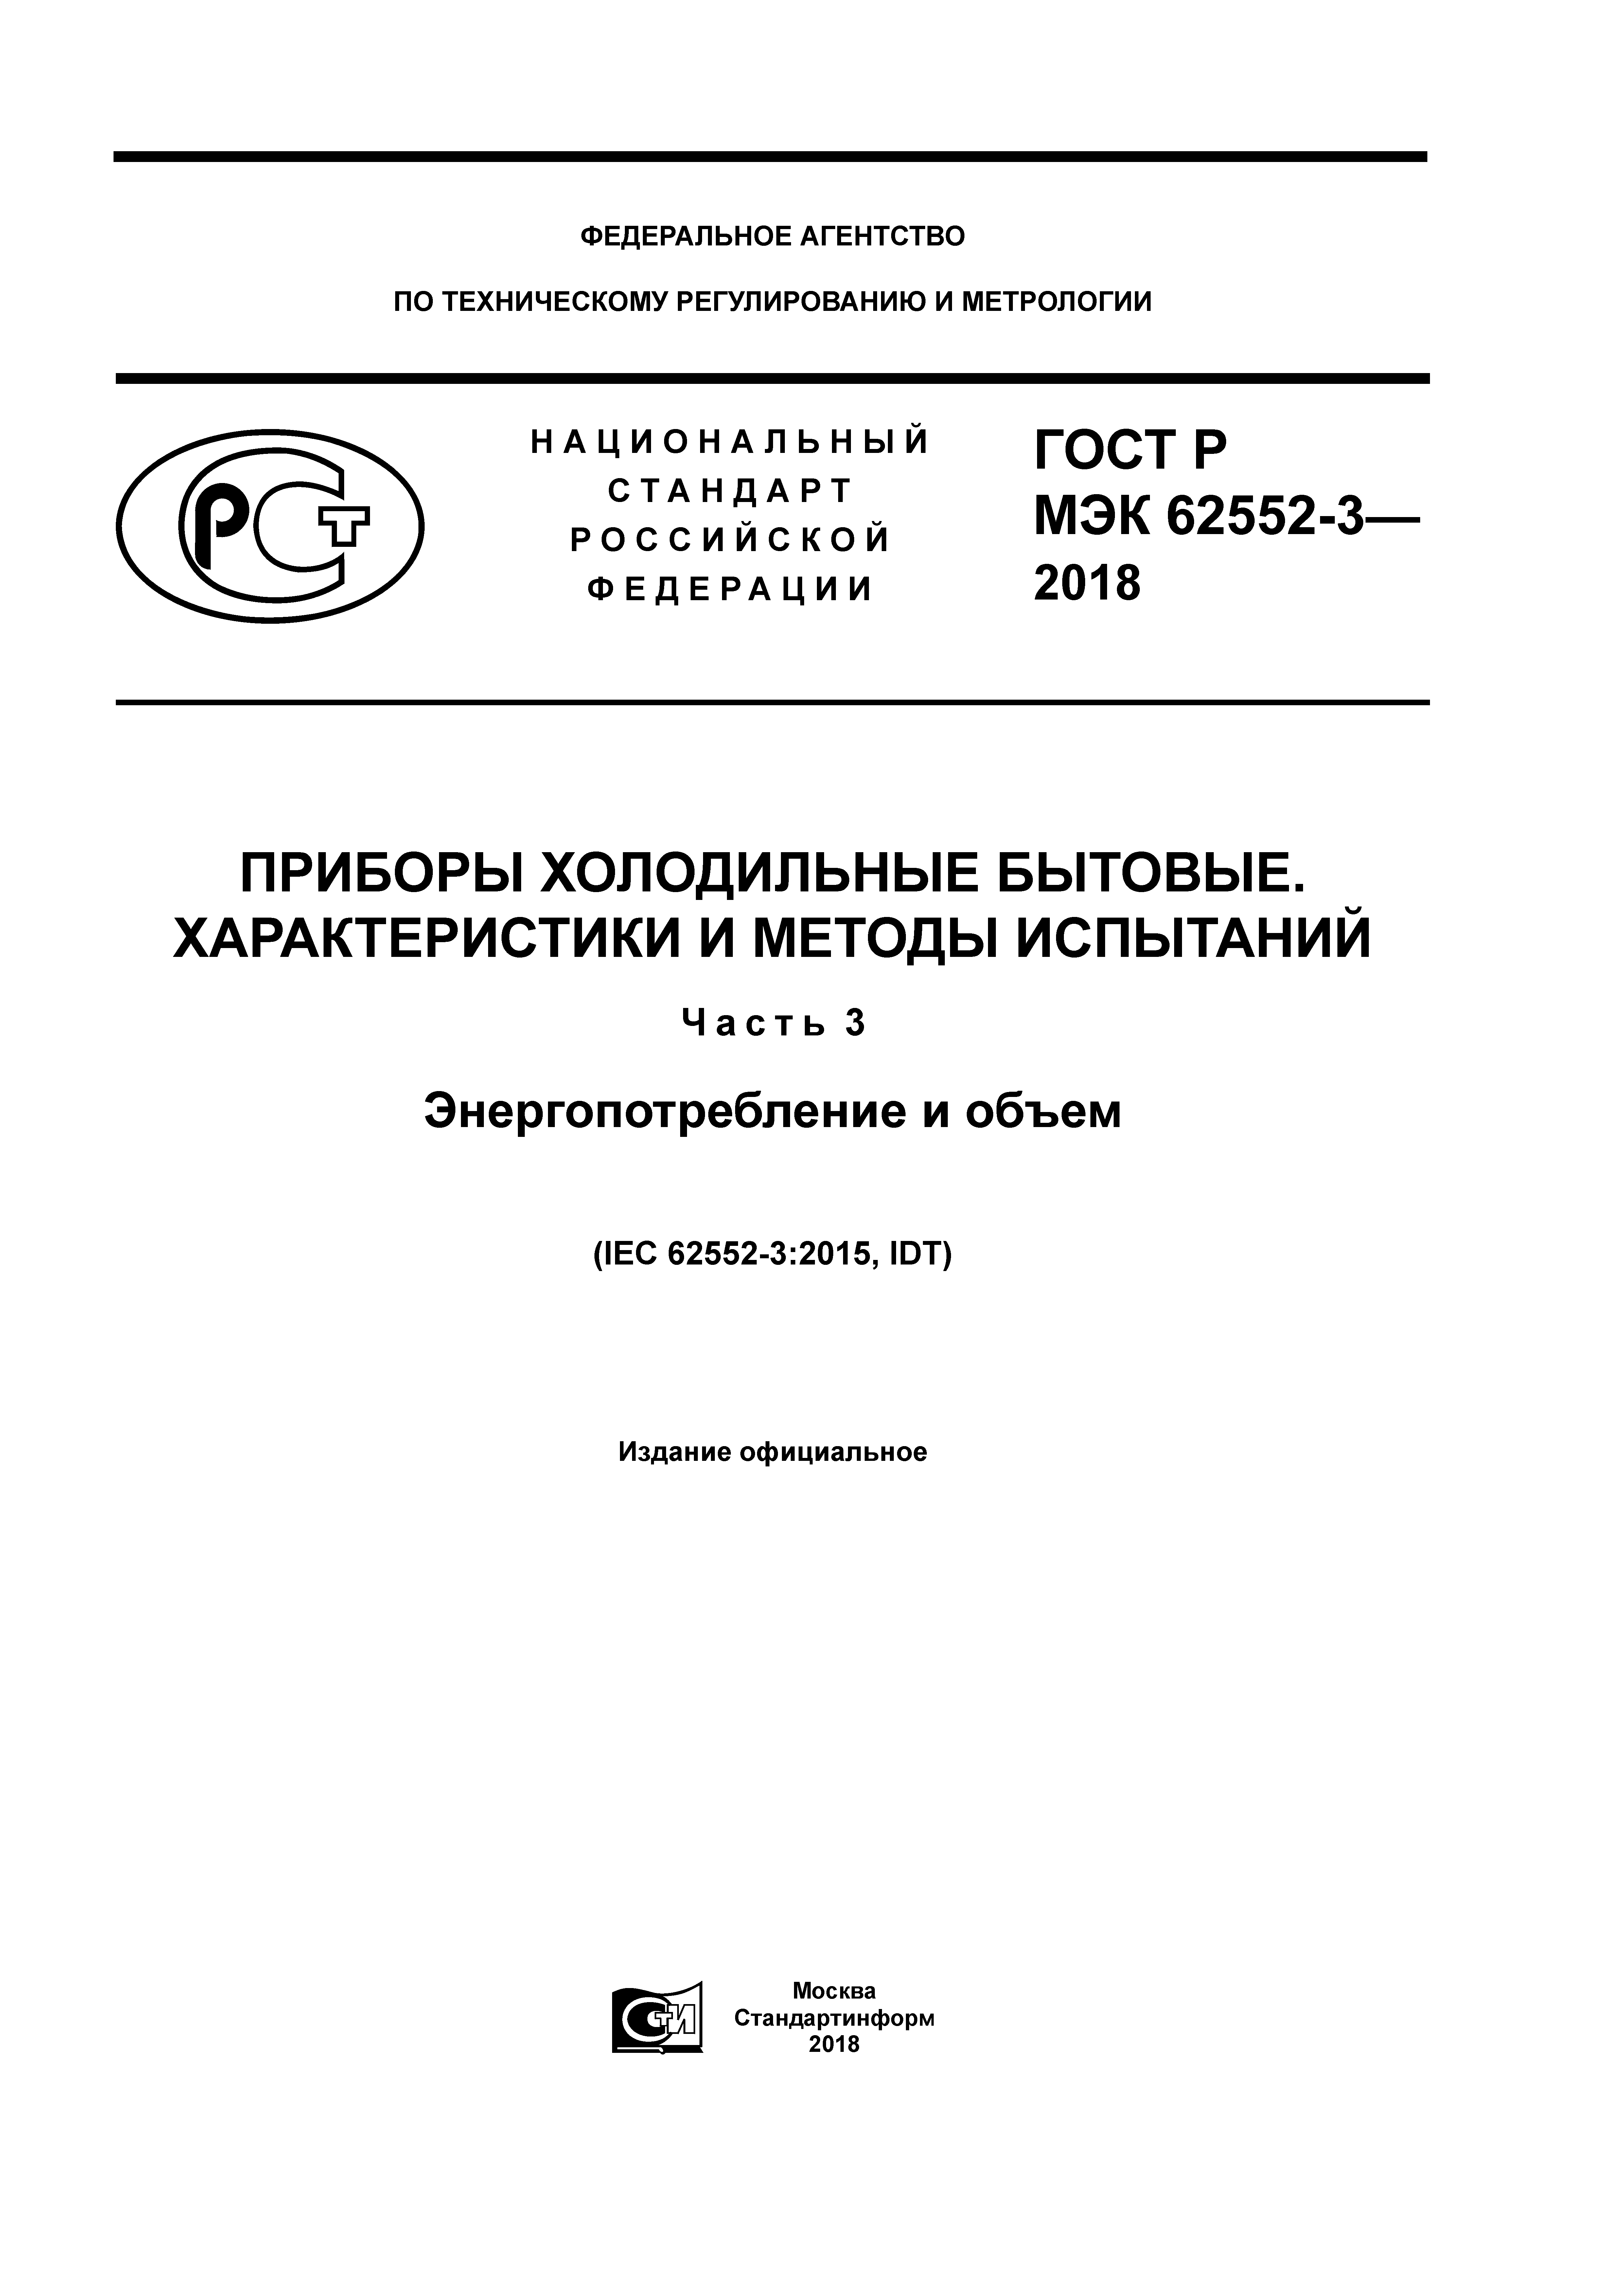 ГОСТ Р МЭК 62552-3-2018